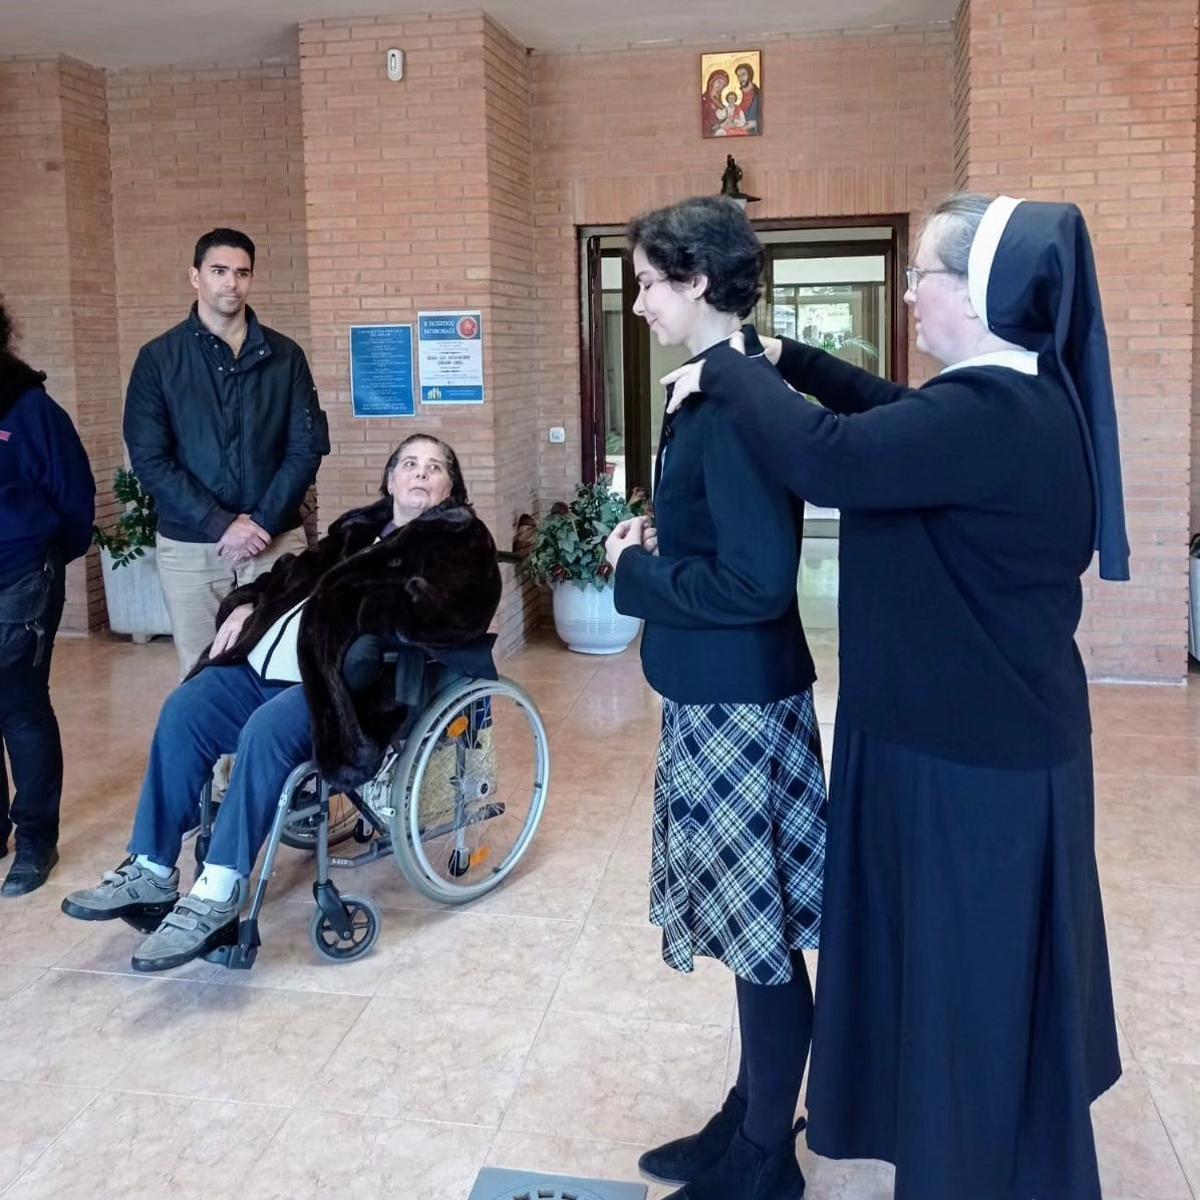 Montse, aspirante a monja, recién recibida por la comunidad religiosa de Hermanas de Nazaret en Benicàssim.